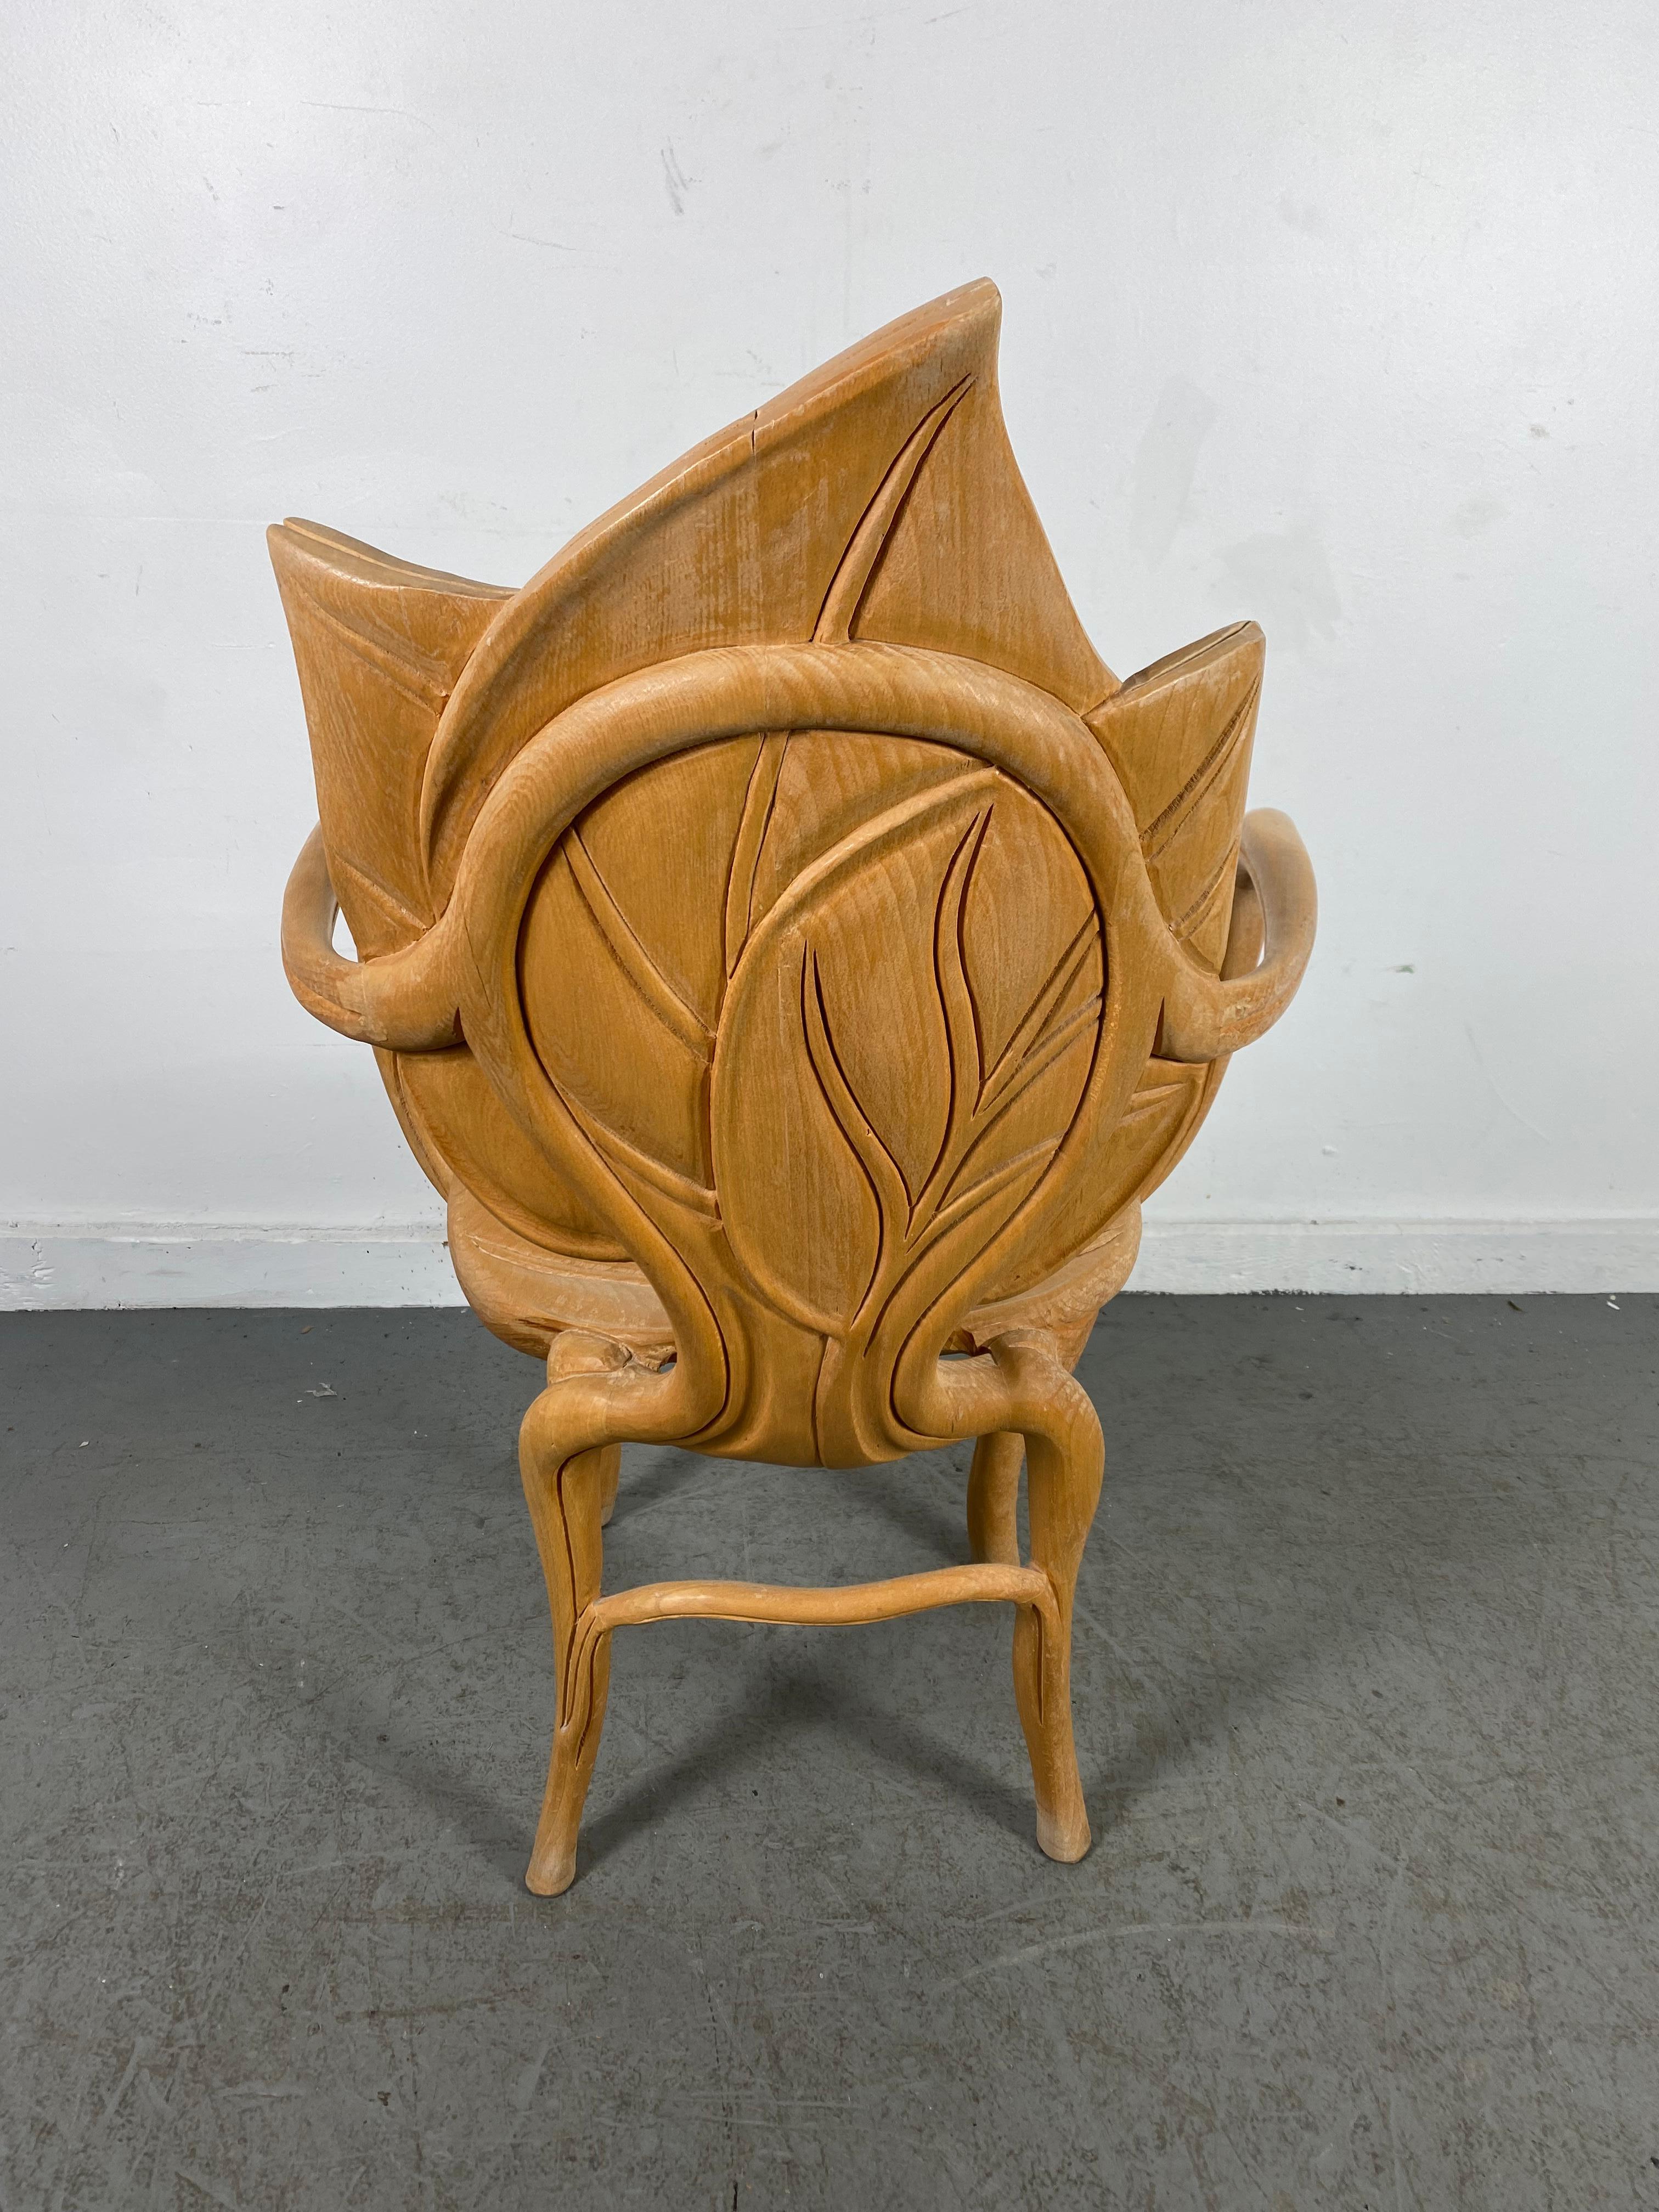 Magnifique fauteuil à feuilles sculptées conçu par Bartolozzi & Maioli. Meuble de fantaisie surréaliste, conserve sa finition d'origine, l'avant du siège présente une usure.